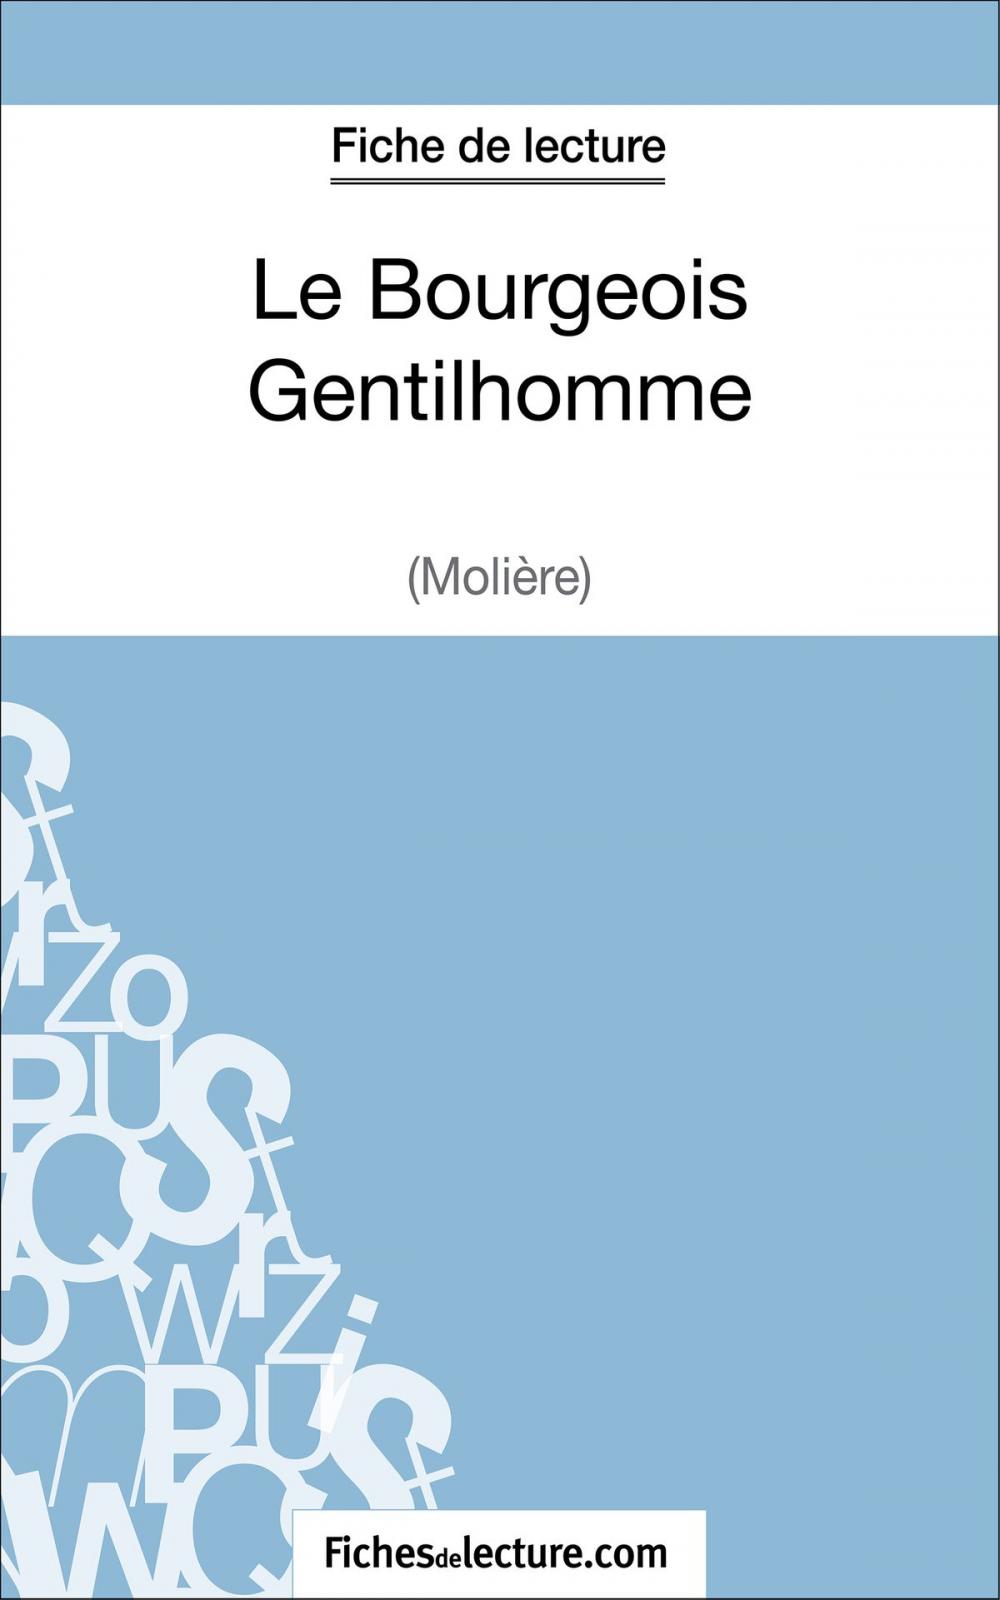 Big bigCover of Le Bourgeois Gentilhomme de Molière (Fiche de lecture)